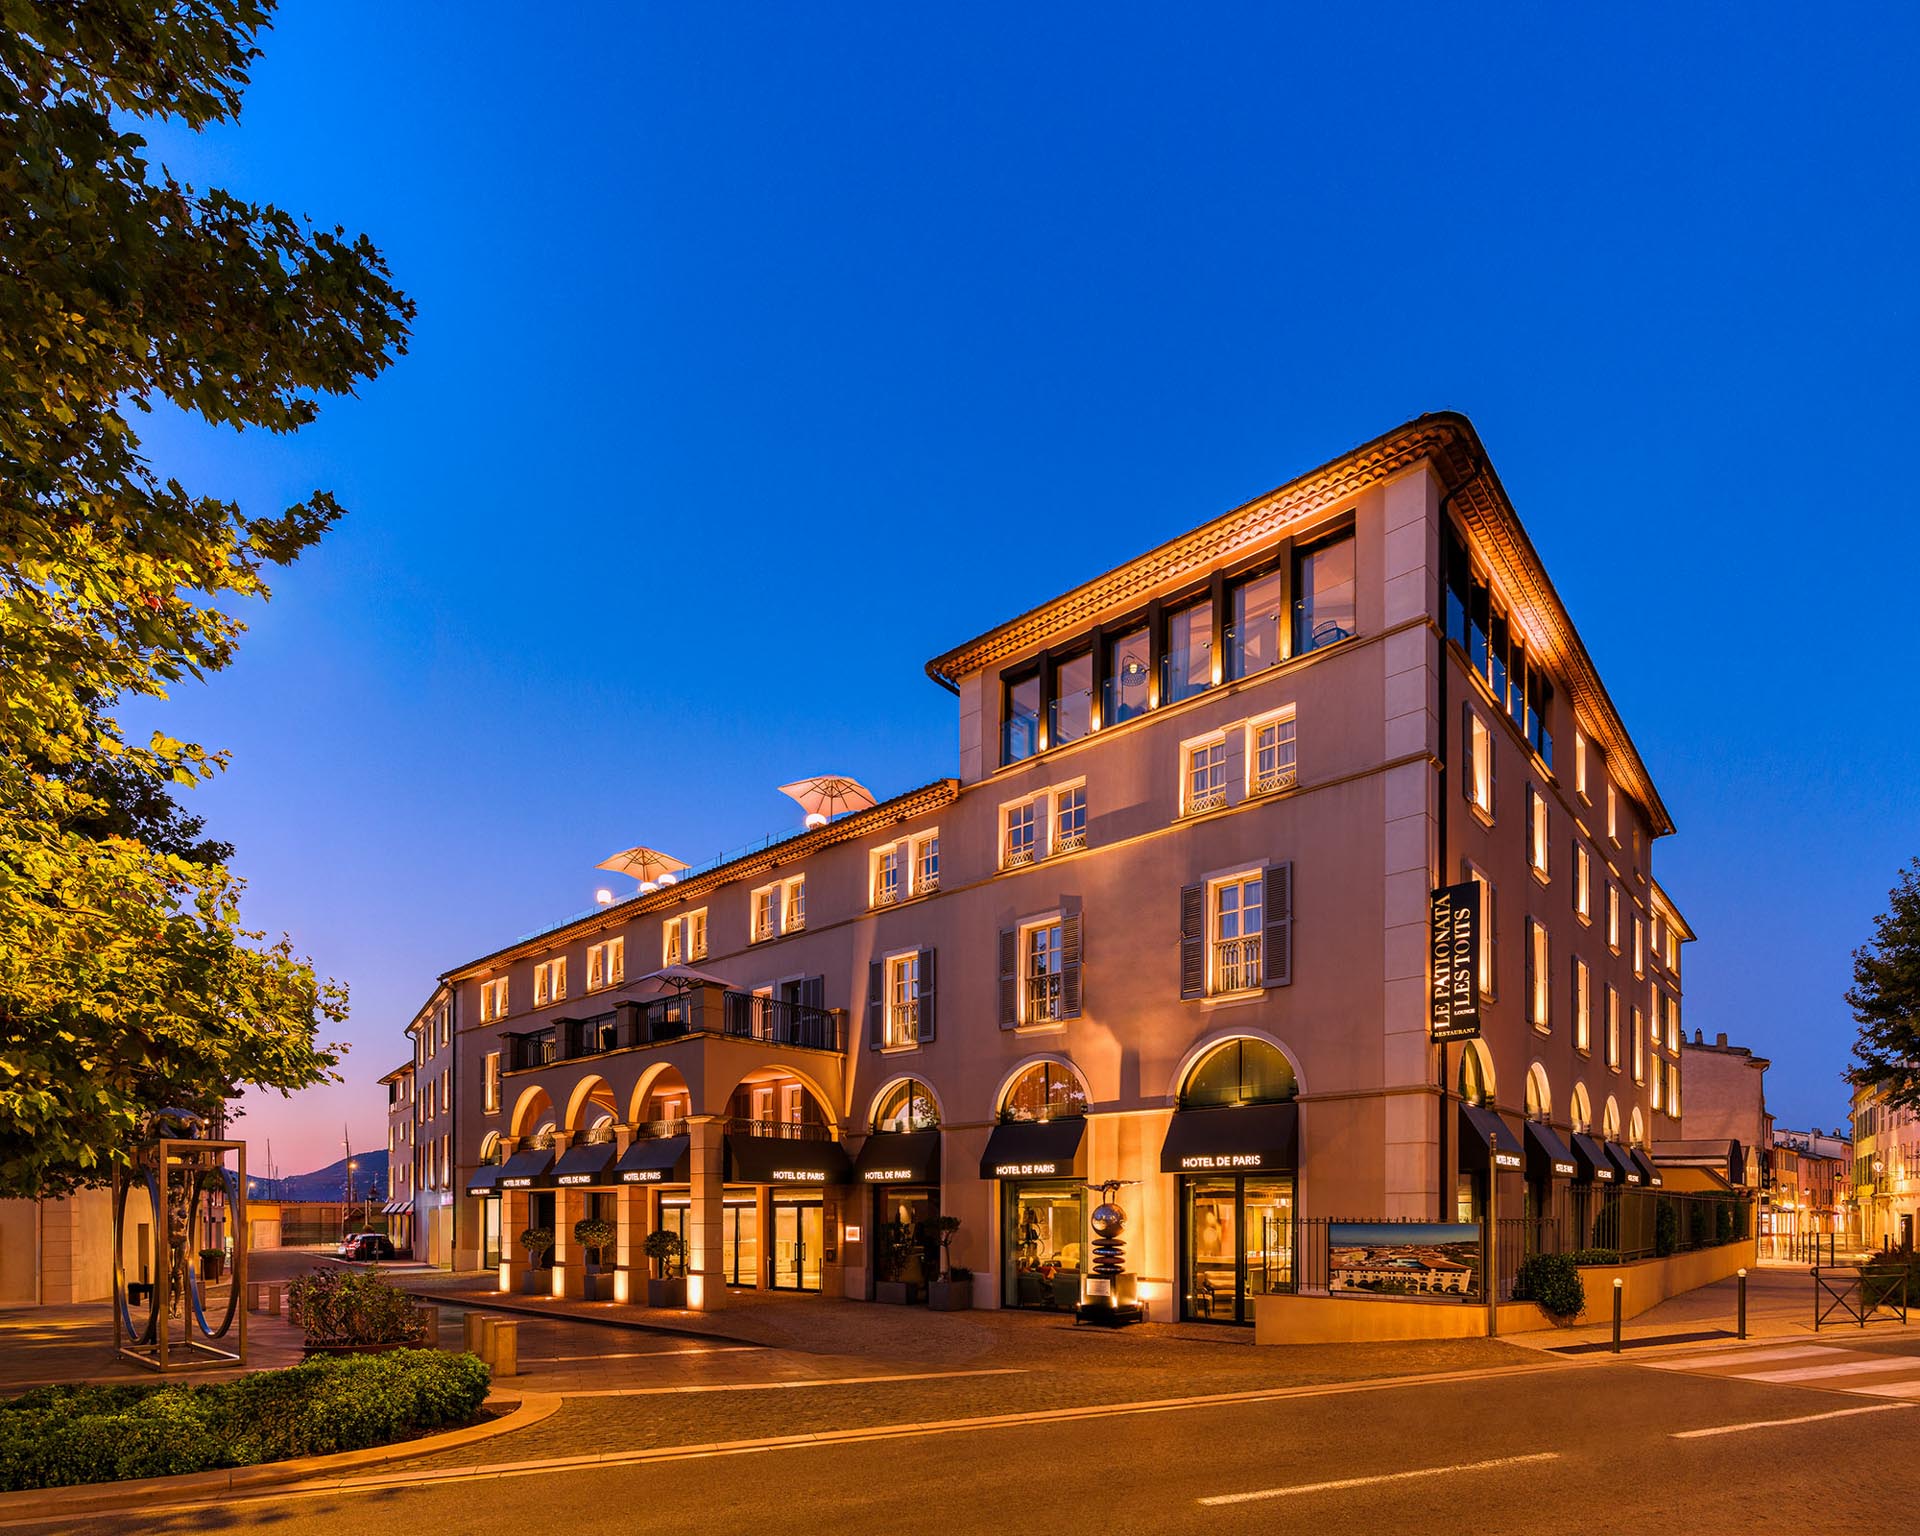 Hotel de Paris Saint-Tropez at Dusk